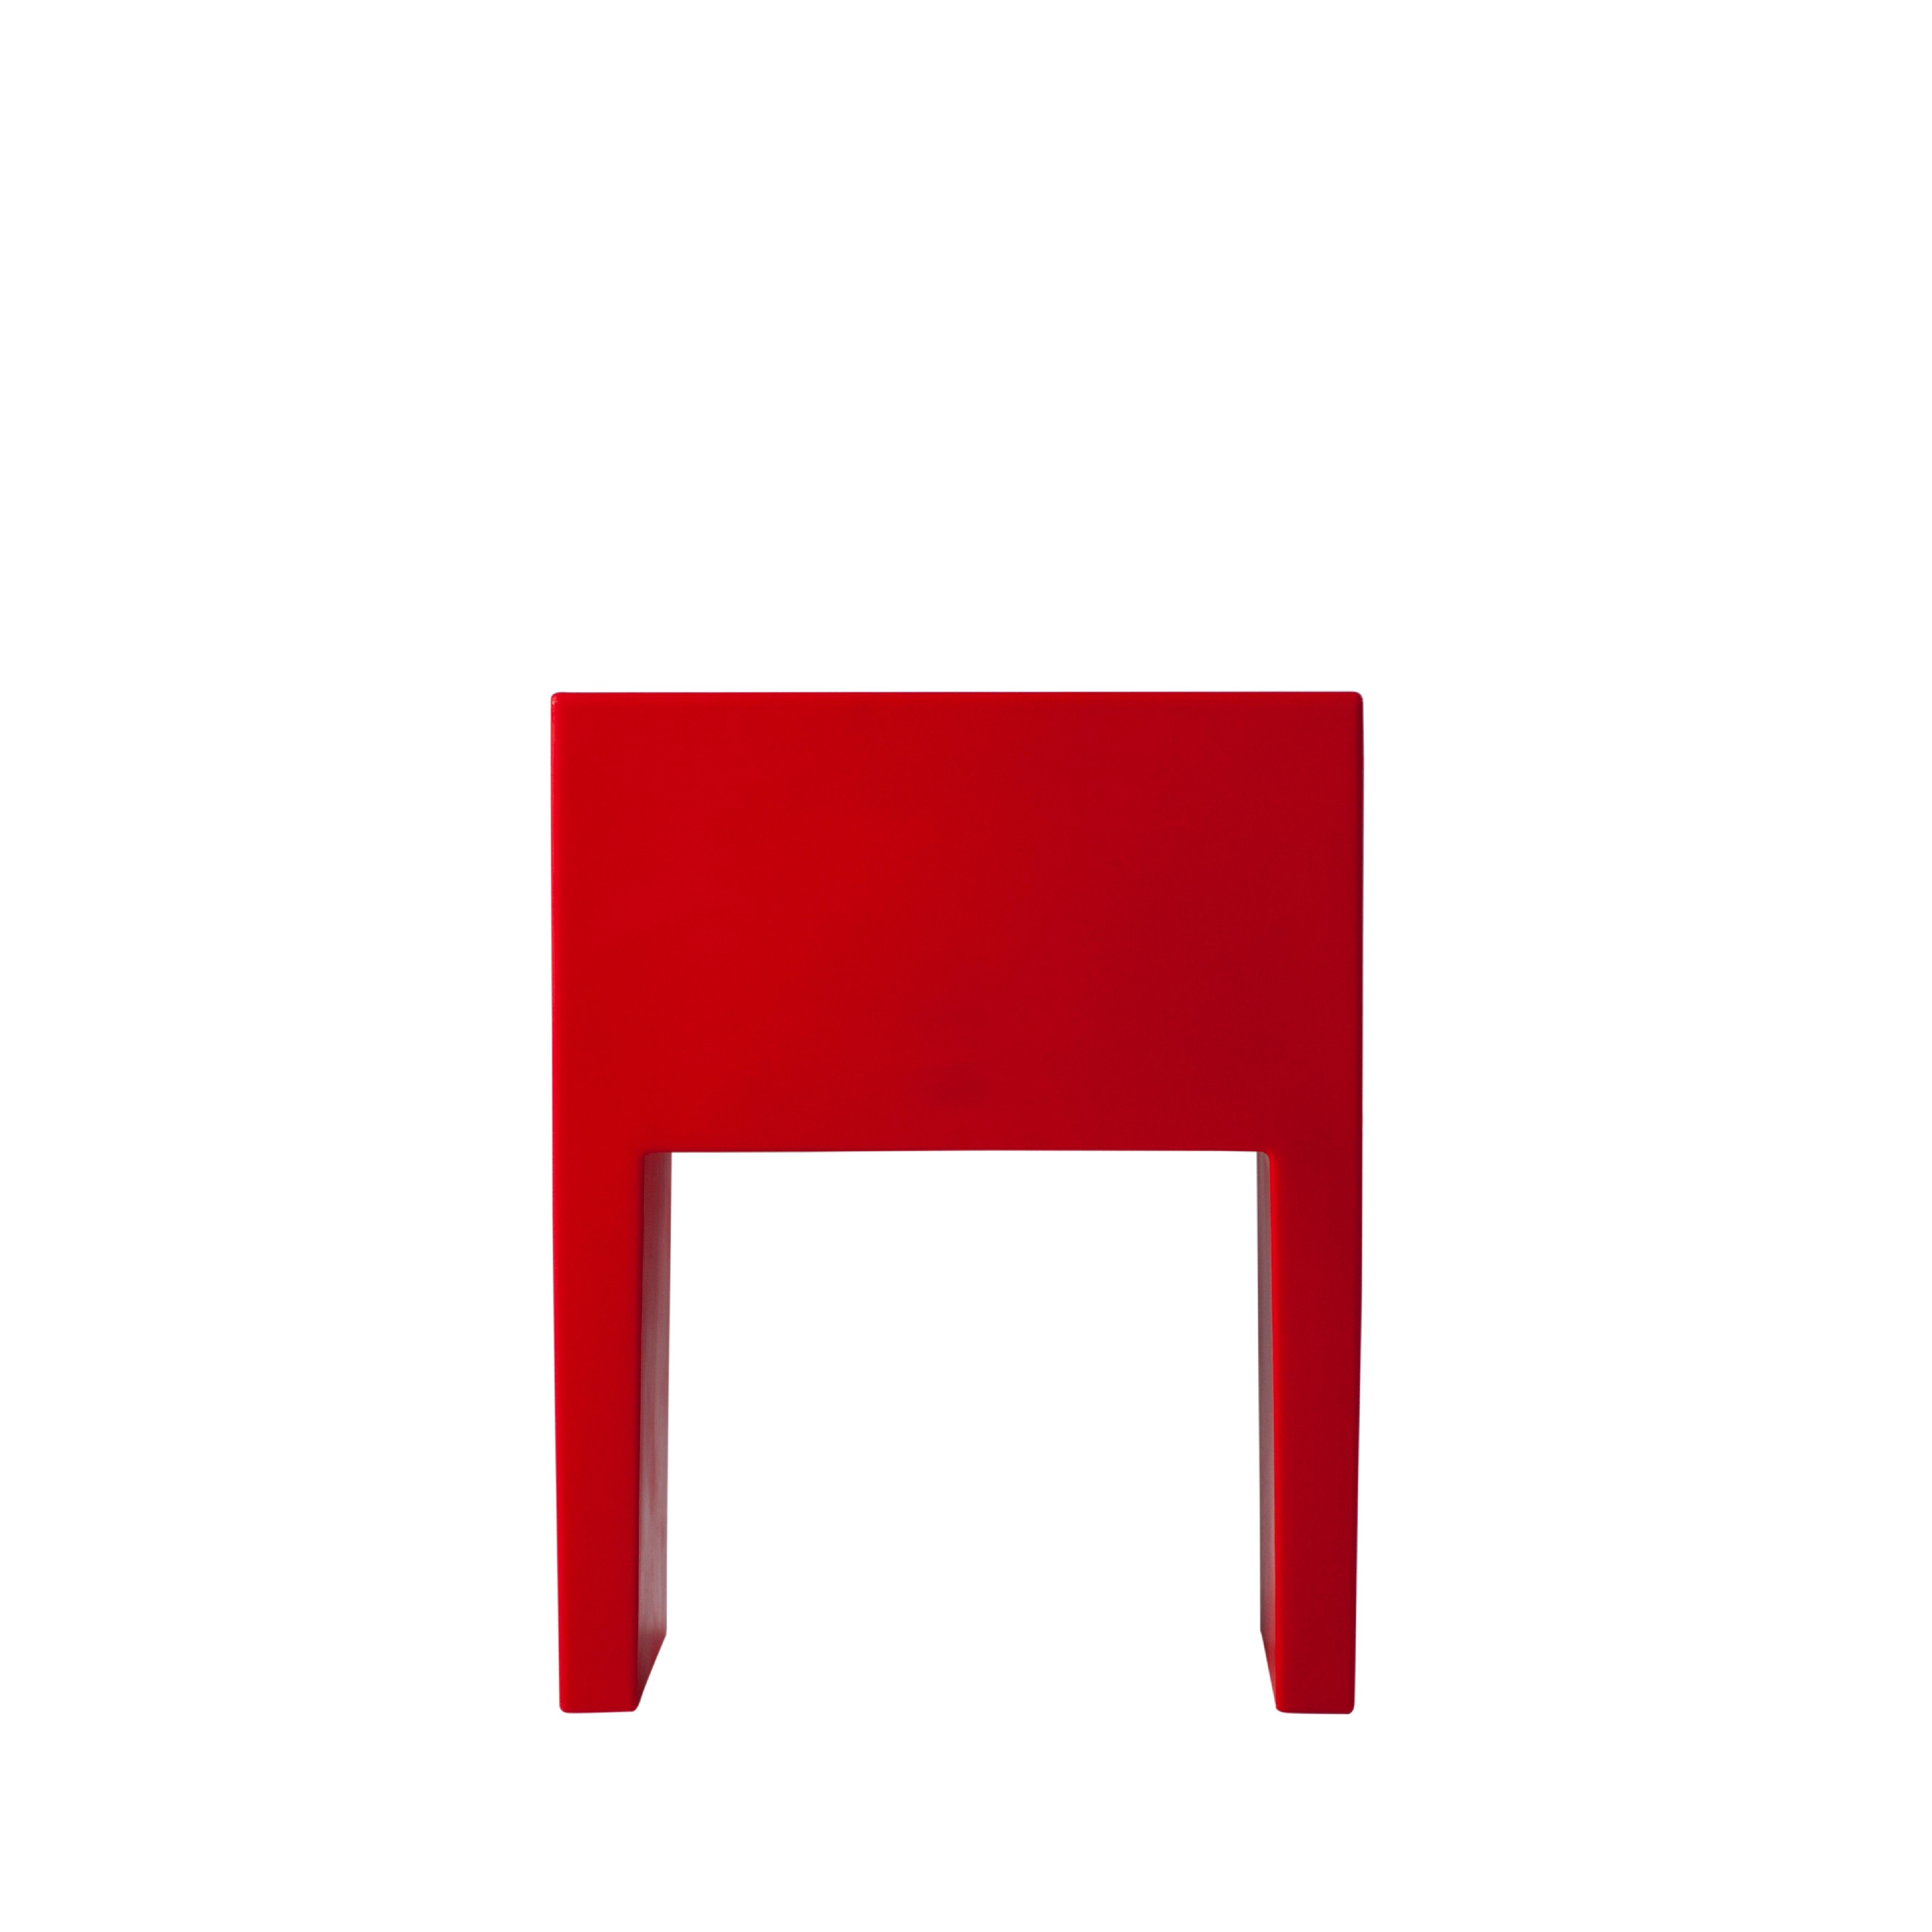 Angolo Retto est une chaise au design extrêmement compact : ses dimensions et sa forme essentielle en font un produit idéal pour les collectivités et les particuliers. Angolo Retto personnalise les espaces extérieurs et intérieurs avec une touche de